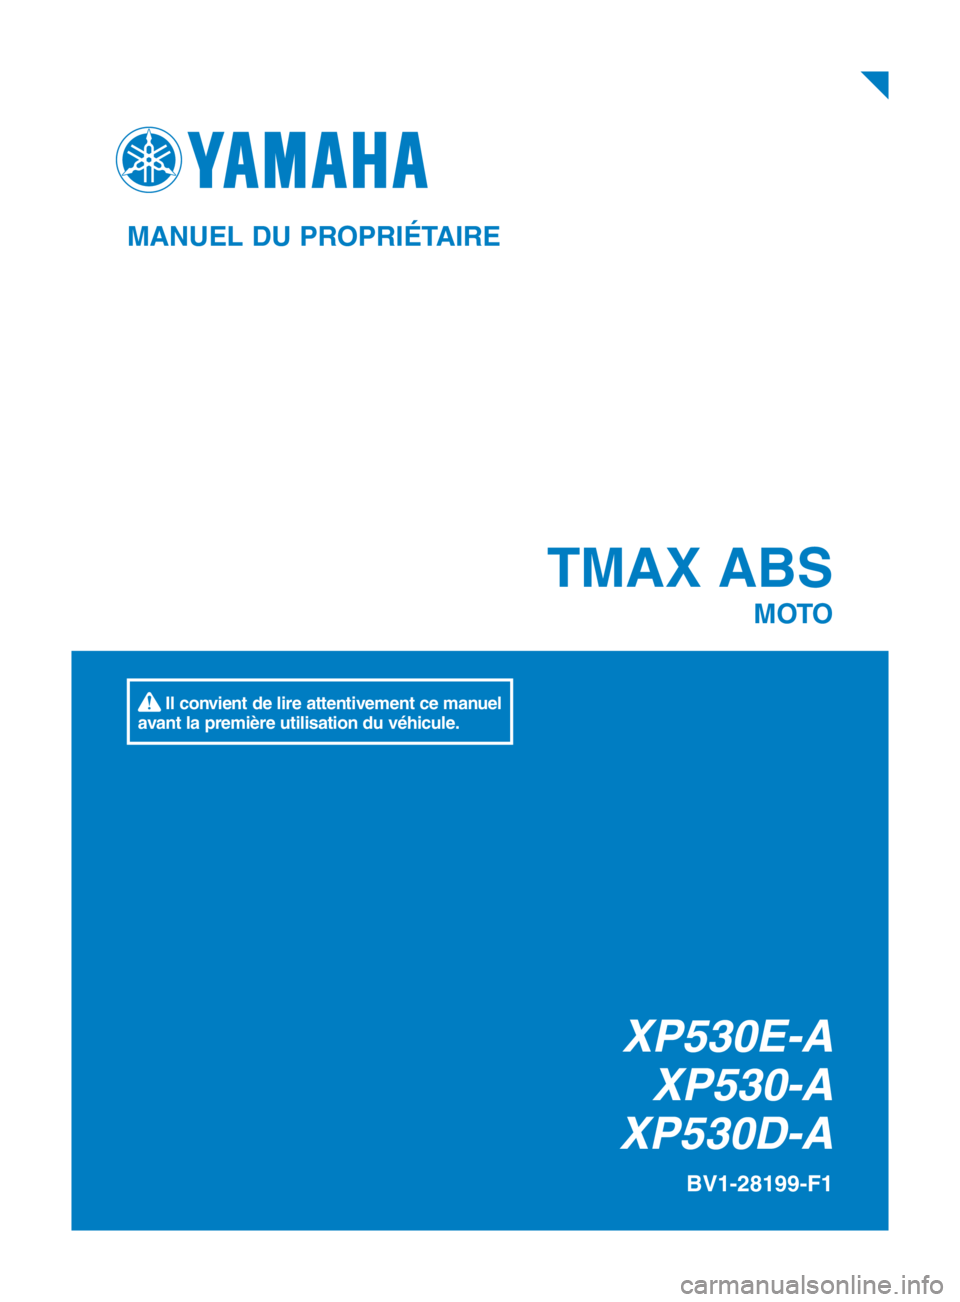 YAMAHA TMAX 2018  Notices Demploi (in French)  TMAX  ABS
MOTO
BV1-28199-F1
MANUEL DU PROPRIÉTAIRE
 Il convient de lire attentivement ce manuel 
avant la première utilisation du véhicule.
XP530E-A XP530-A
XP530D-A
BV1-28199-F1_cover.indd   1201